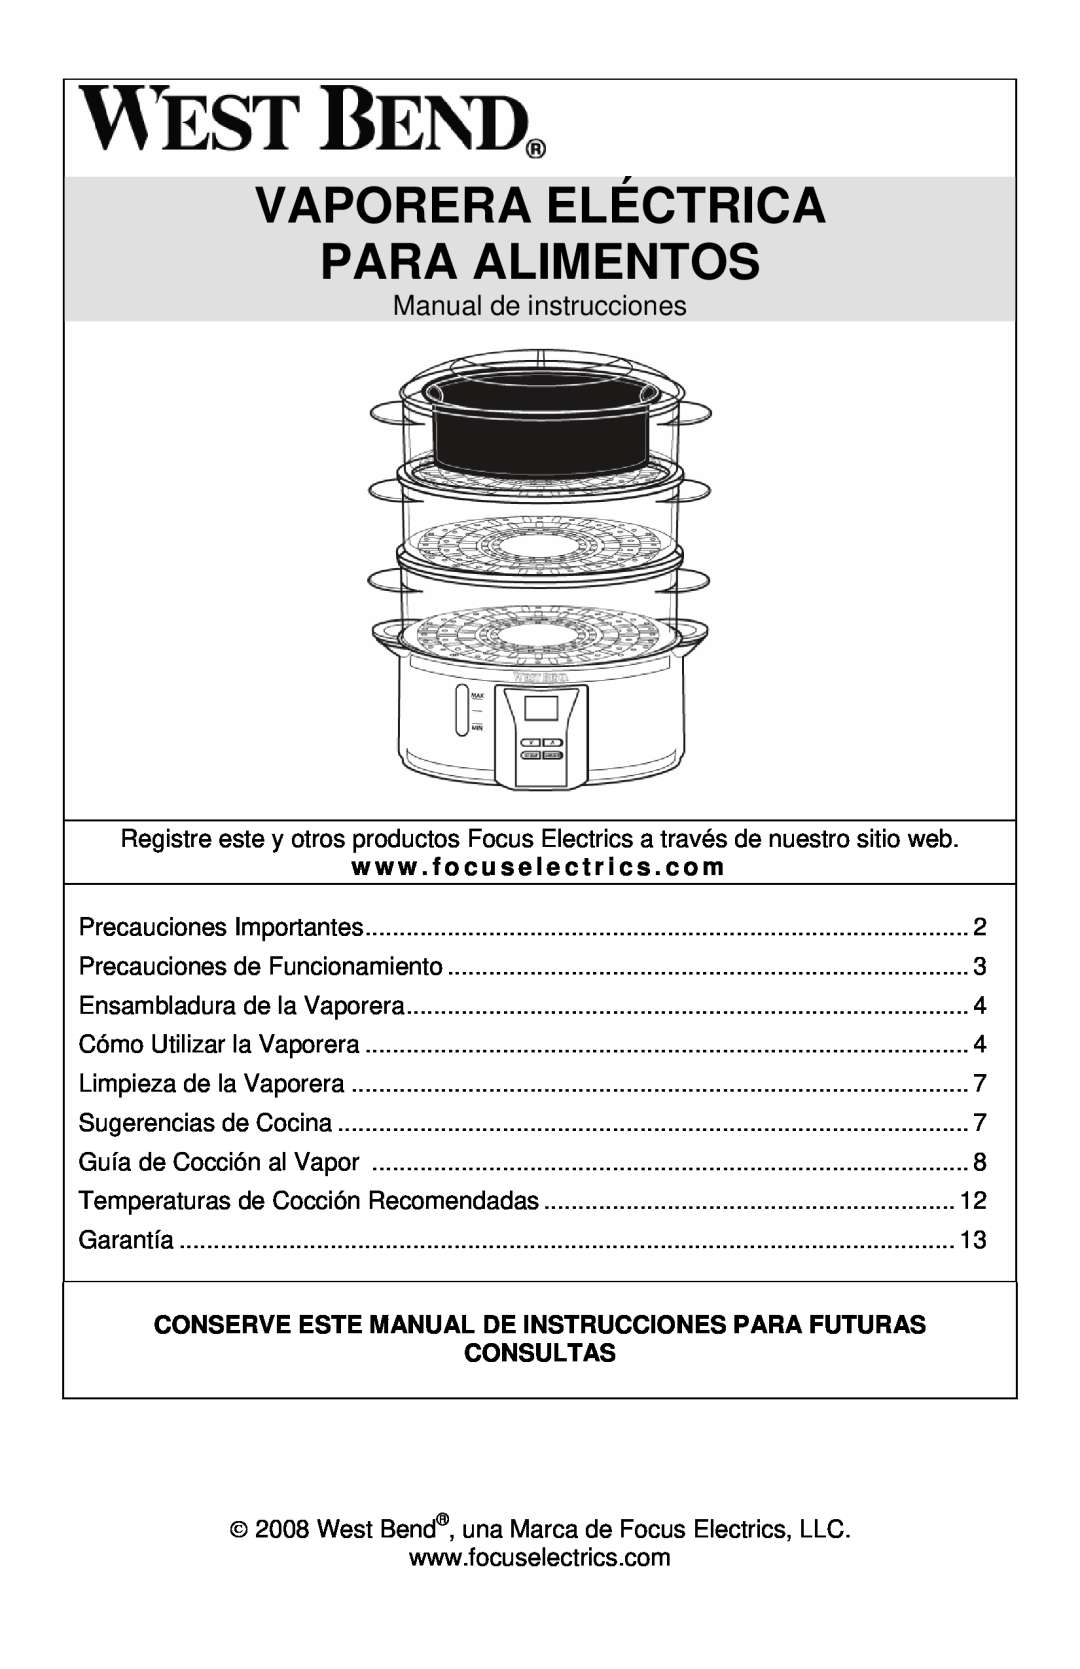 West Bend 86604, L5674B instruction manual Vaporera Eléctrica Para Alimentos, Manual de instrucciones, Consultas 